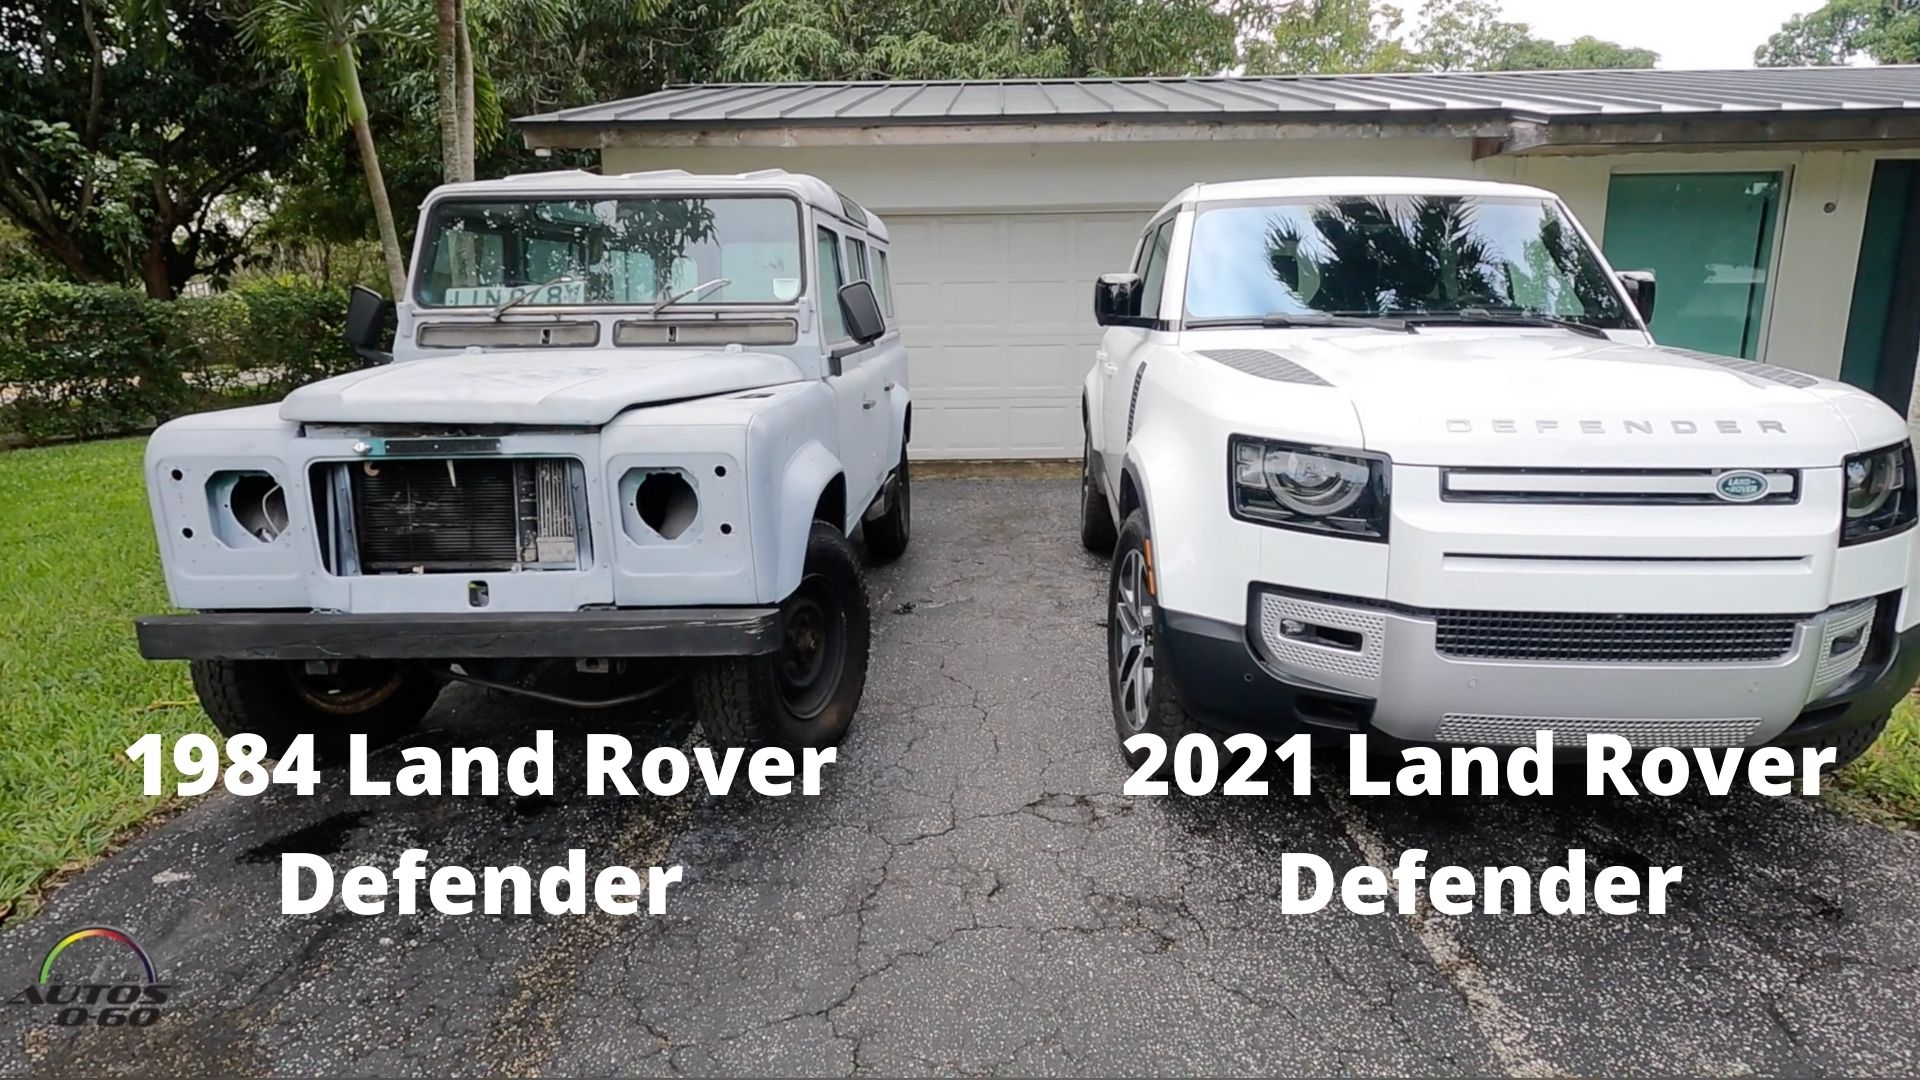 1984 Land Rover Defender vs 2021 Land Rover Defender